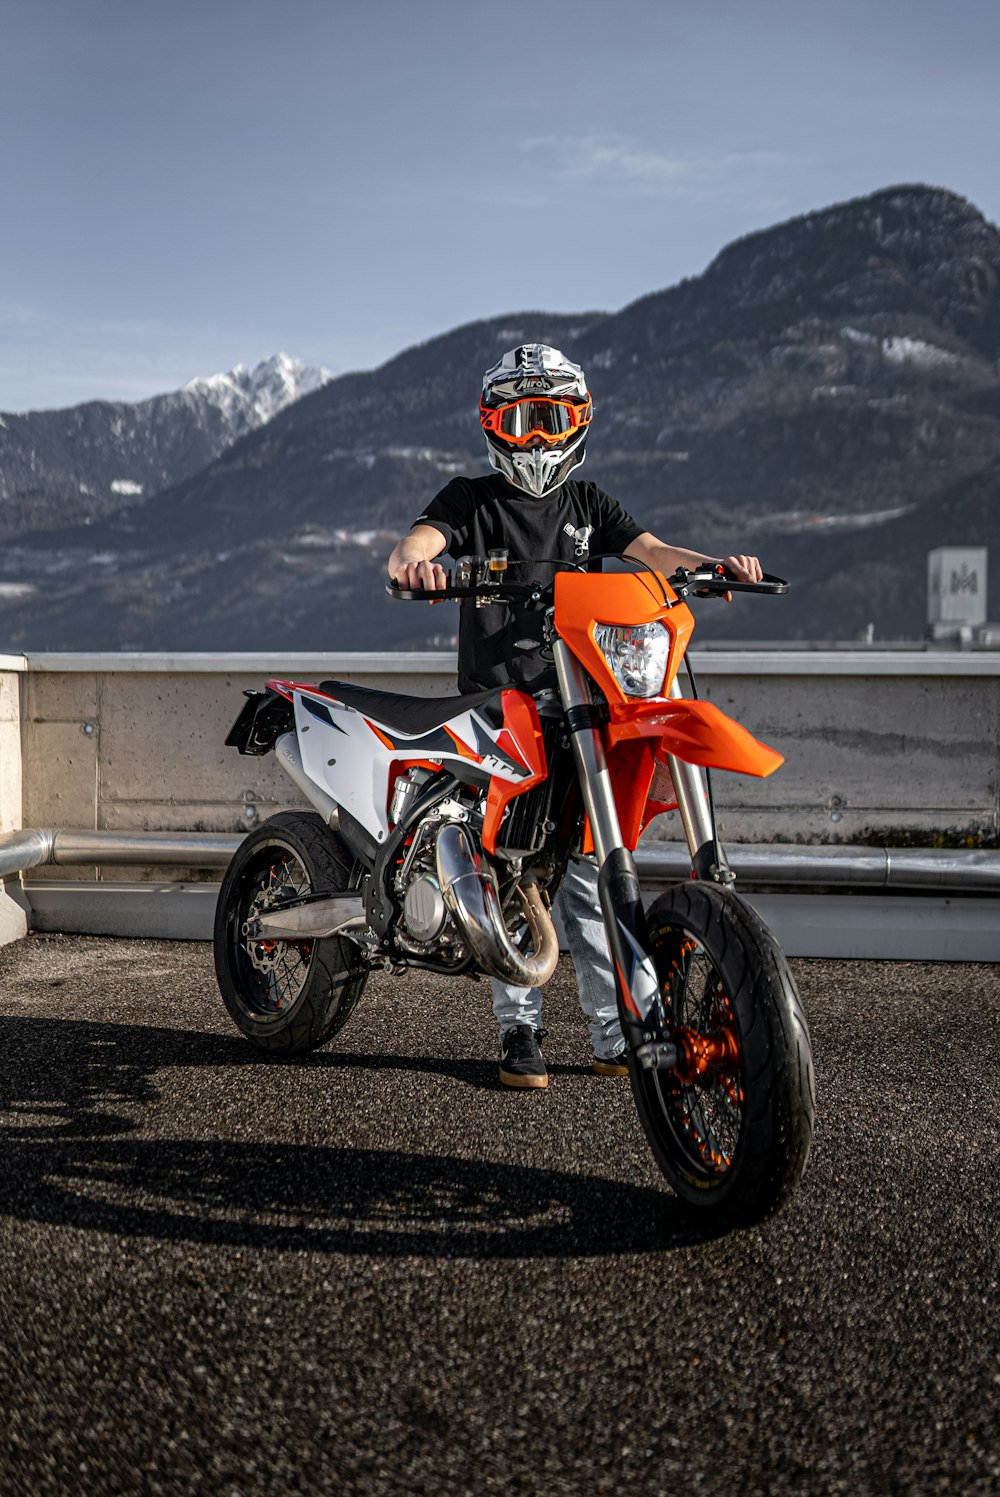 uomo in tuta da motociclista arancione e nera in sella a una moto arancione e nera